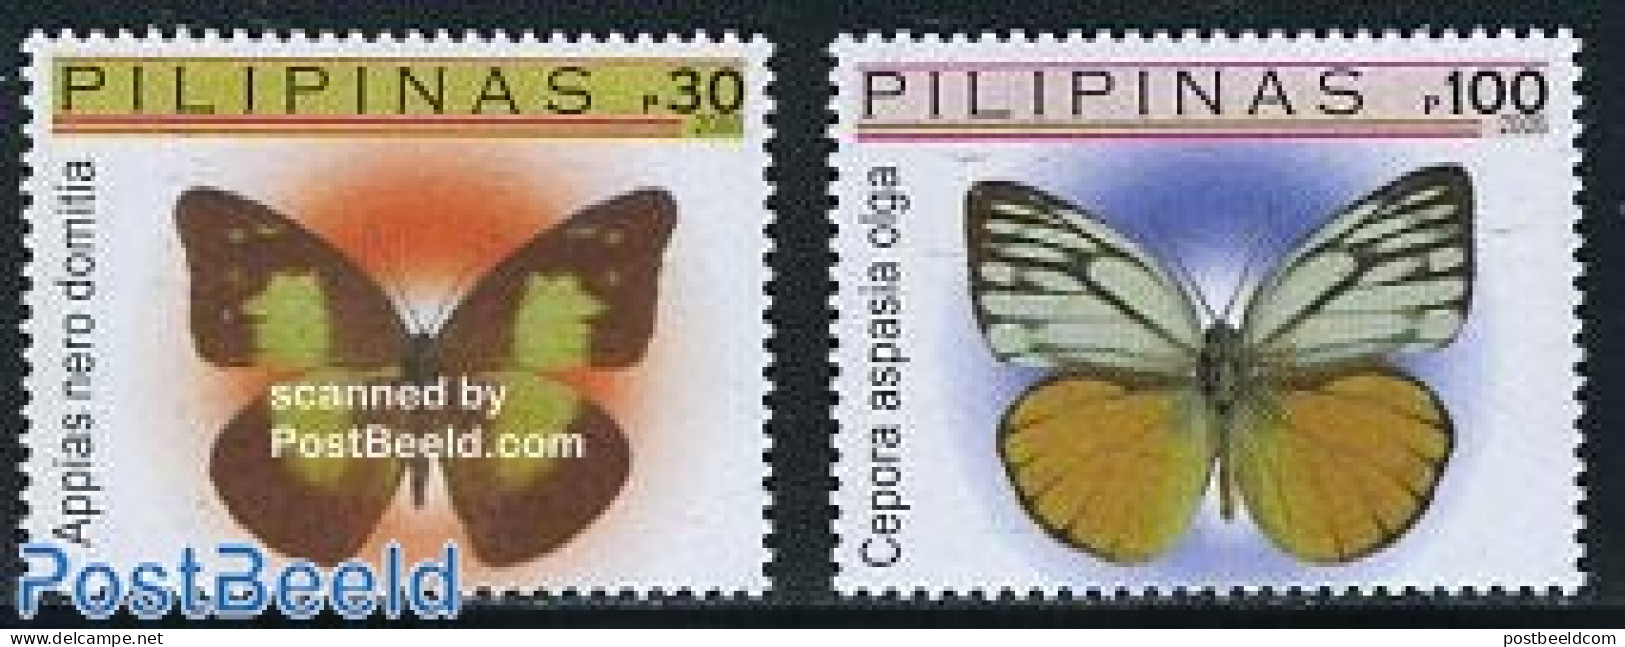 Philippines 2006 Definitives, Butterflies 2v, Mint NH, Nature - Butterflies - Philippinen